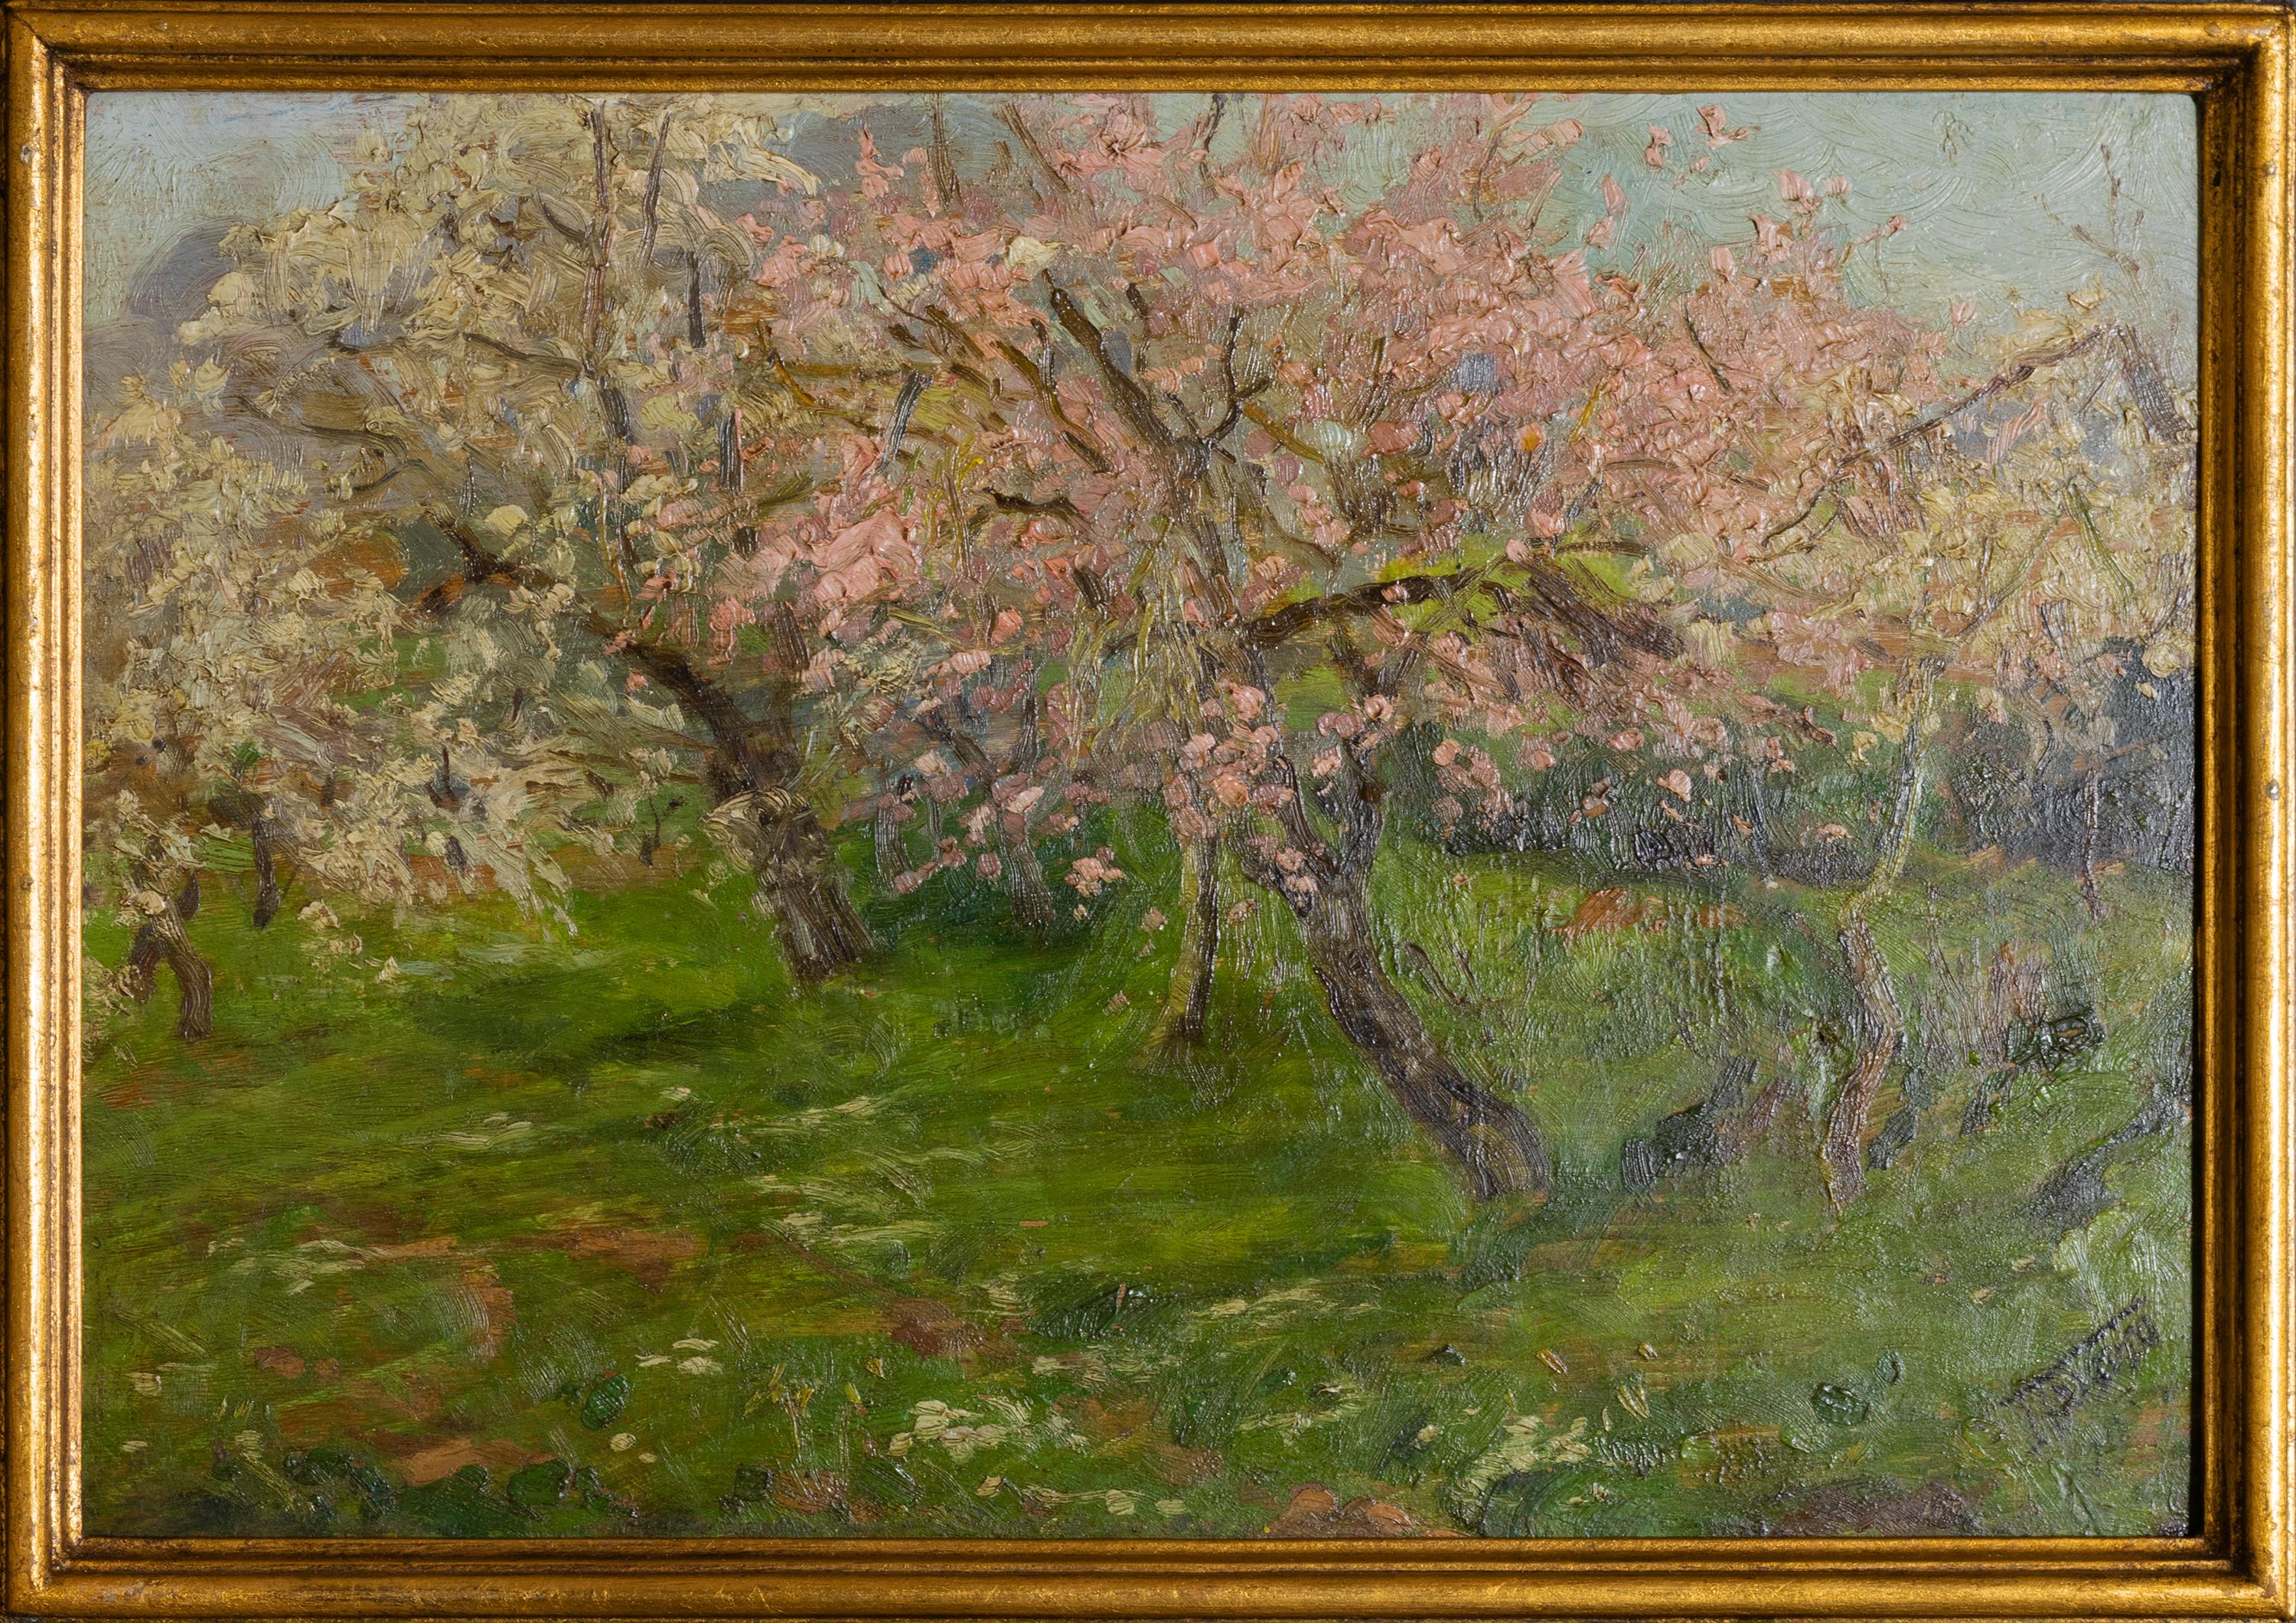 Ein Gemälde des portugiesischen Malers Falcão Trigoso mit einer Naturszene von blühenden Mandelbäumen im Frühling.
Unterzeichnet 